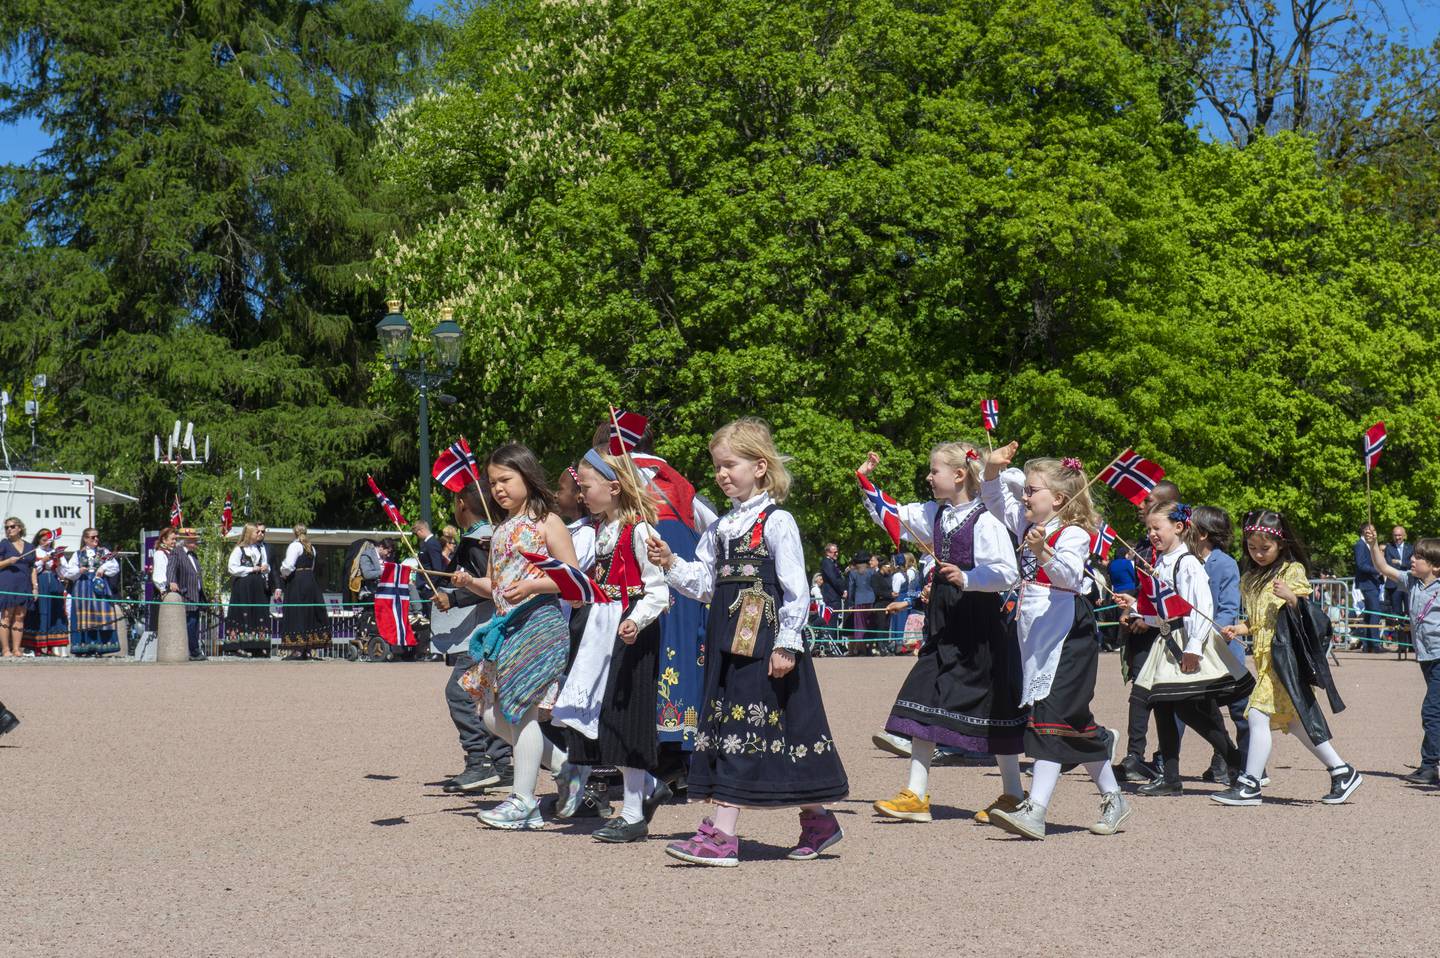 En tradisjonell grunnlovsfeiring er en stor glede, forteller Støre. I Oslo kunne barna endelig vinke til kongefamilien. Foto: Annika Byrde / NTB